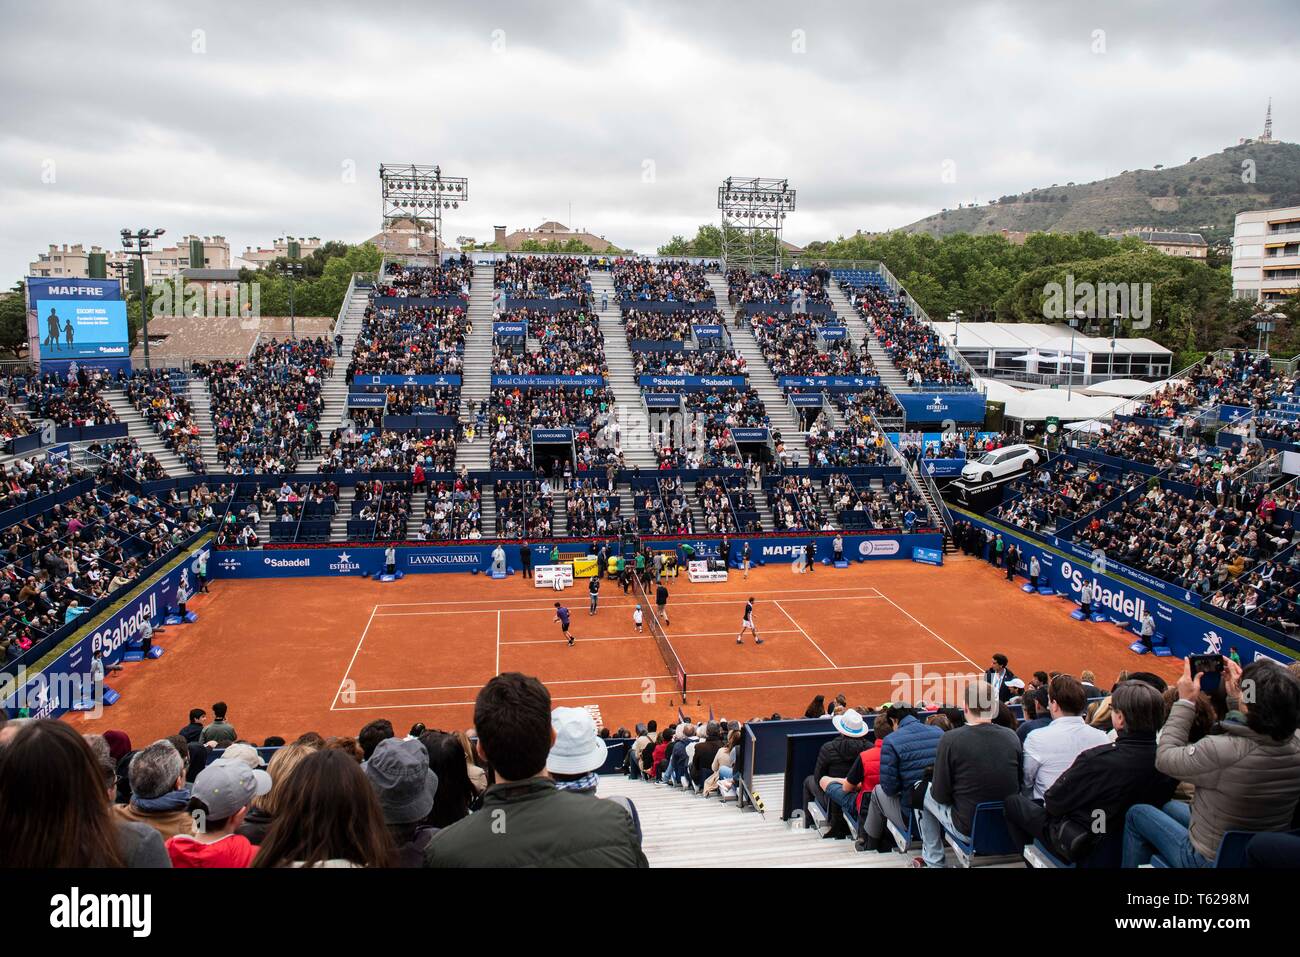 Real Club de Tenis, Barcelone, Espagne. Apr 28, 2019. ATP 500, Barcelone  Open Banc Sabadell, Mens Dominic Thiem finale (Aut) et Daniil Medvedev  (RUS) au jour 7 ; vue générale de Rafa